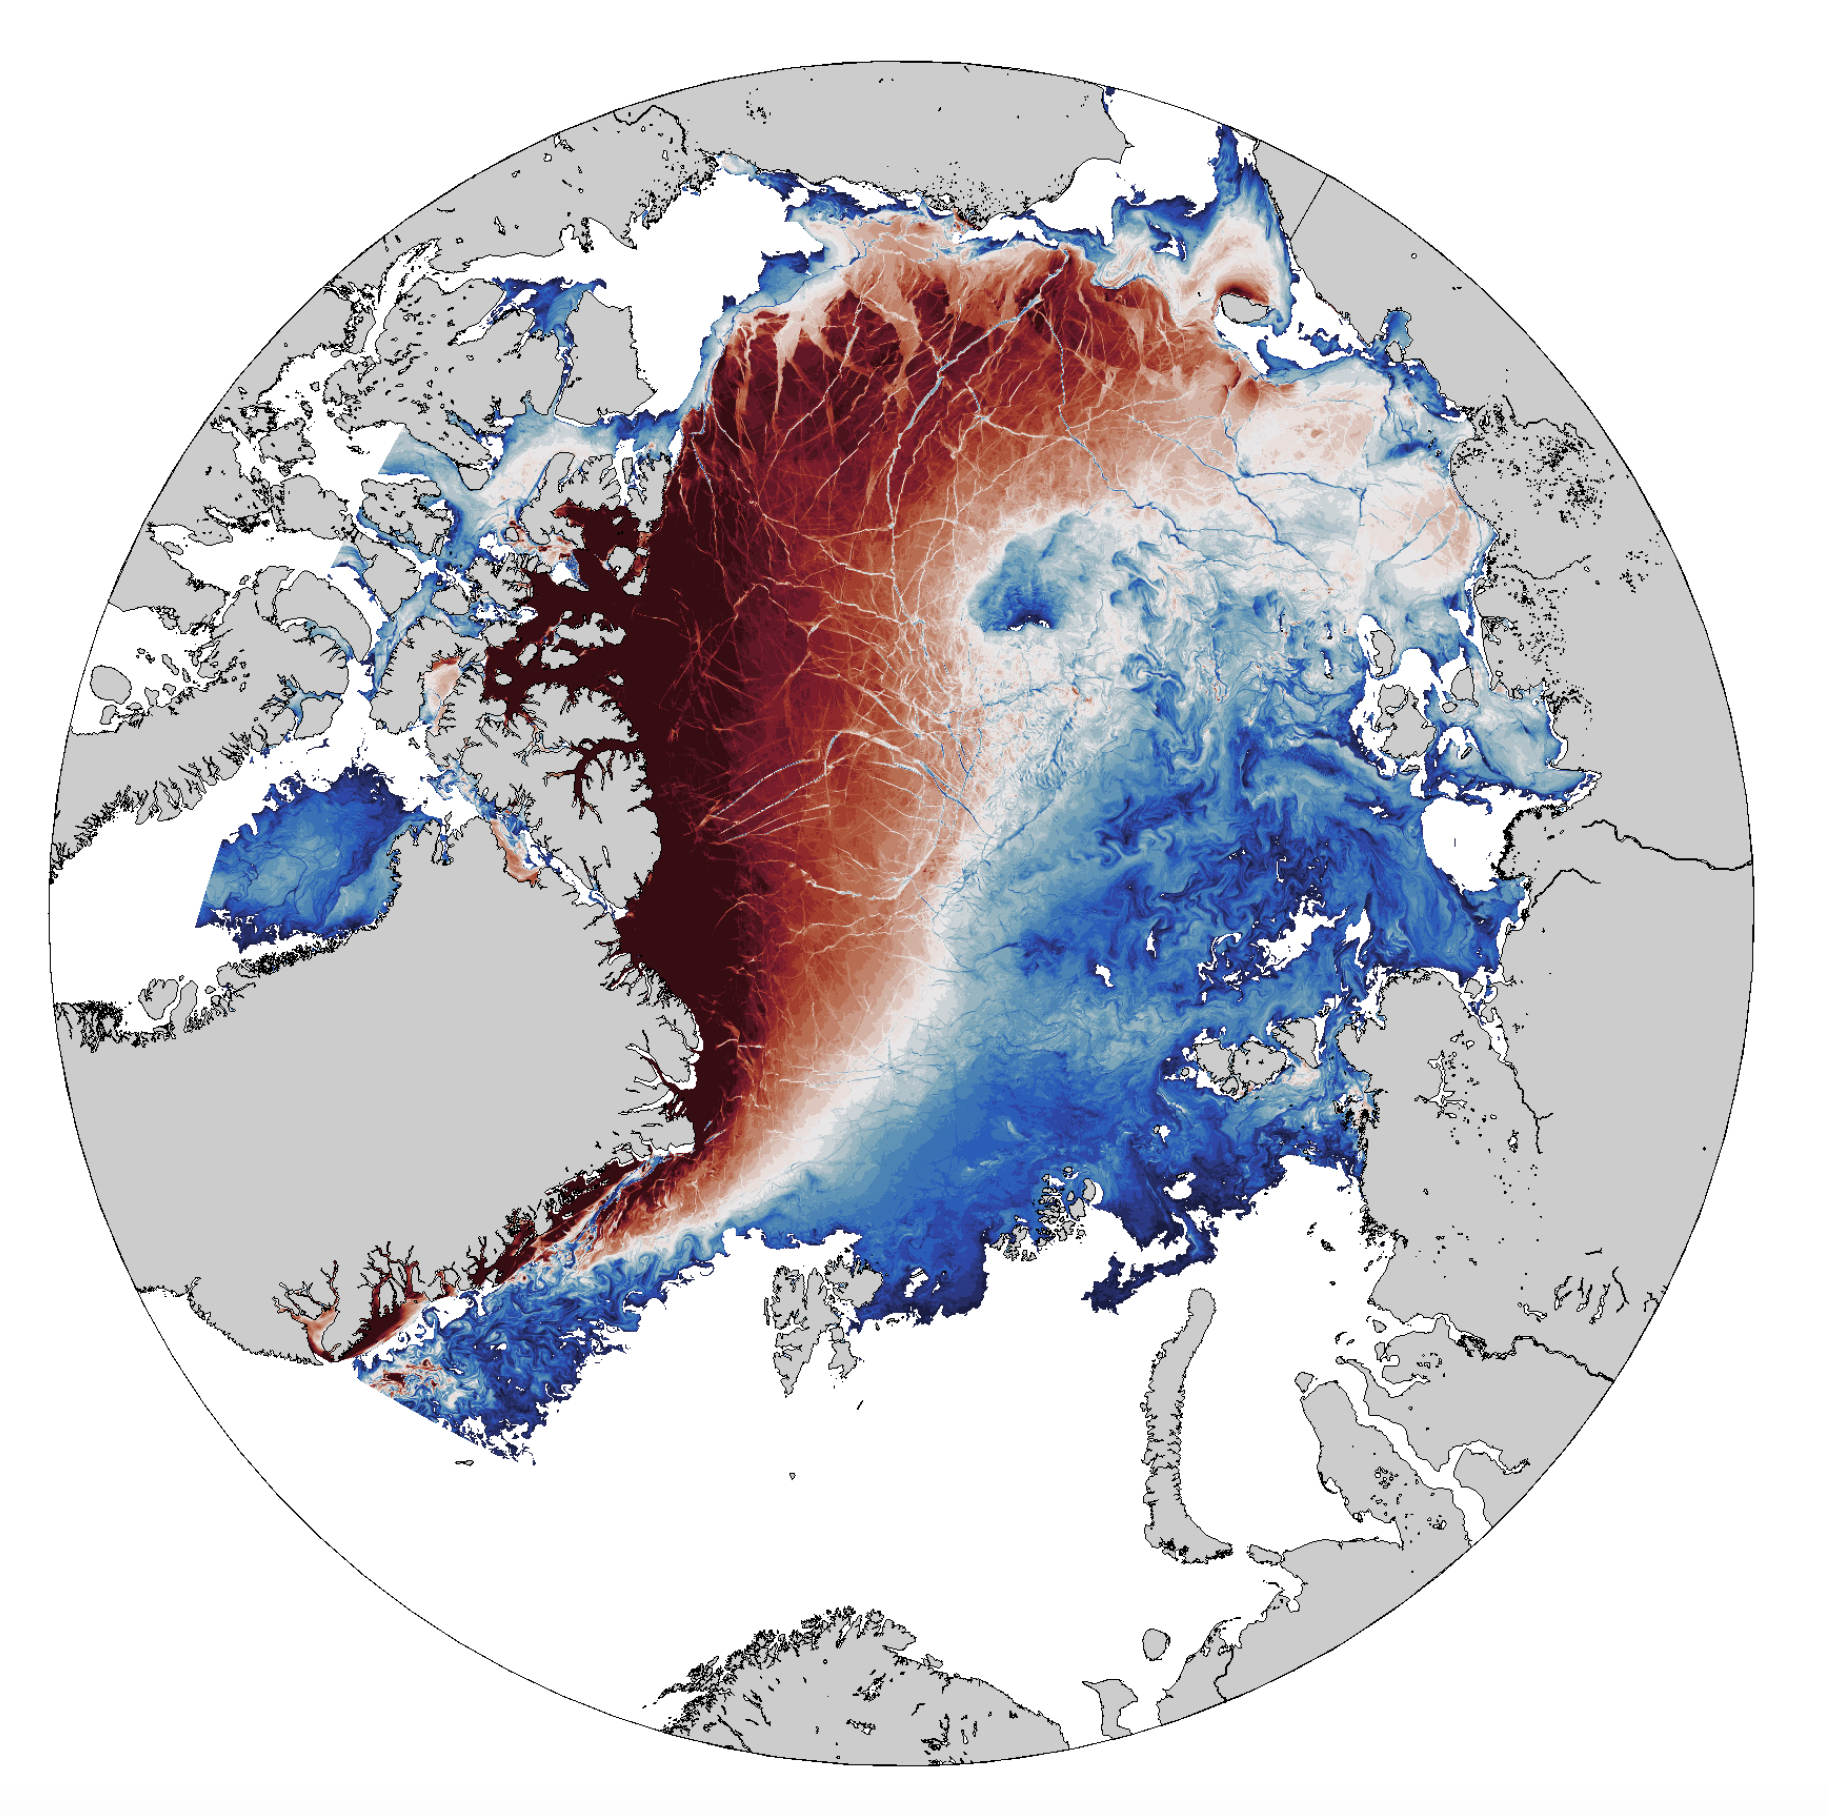 Sea ice dynamics in a LLC4320